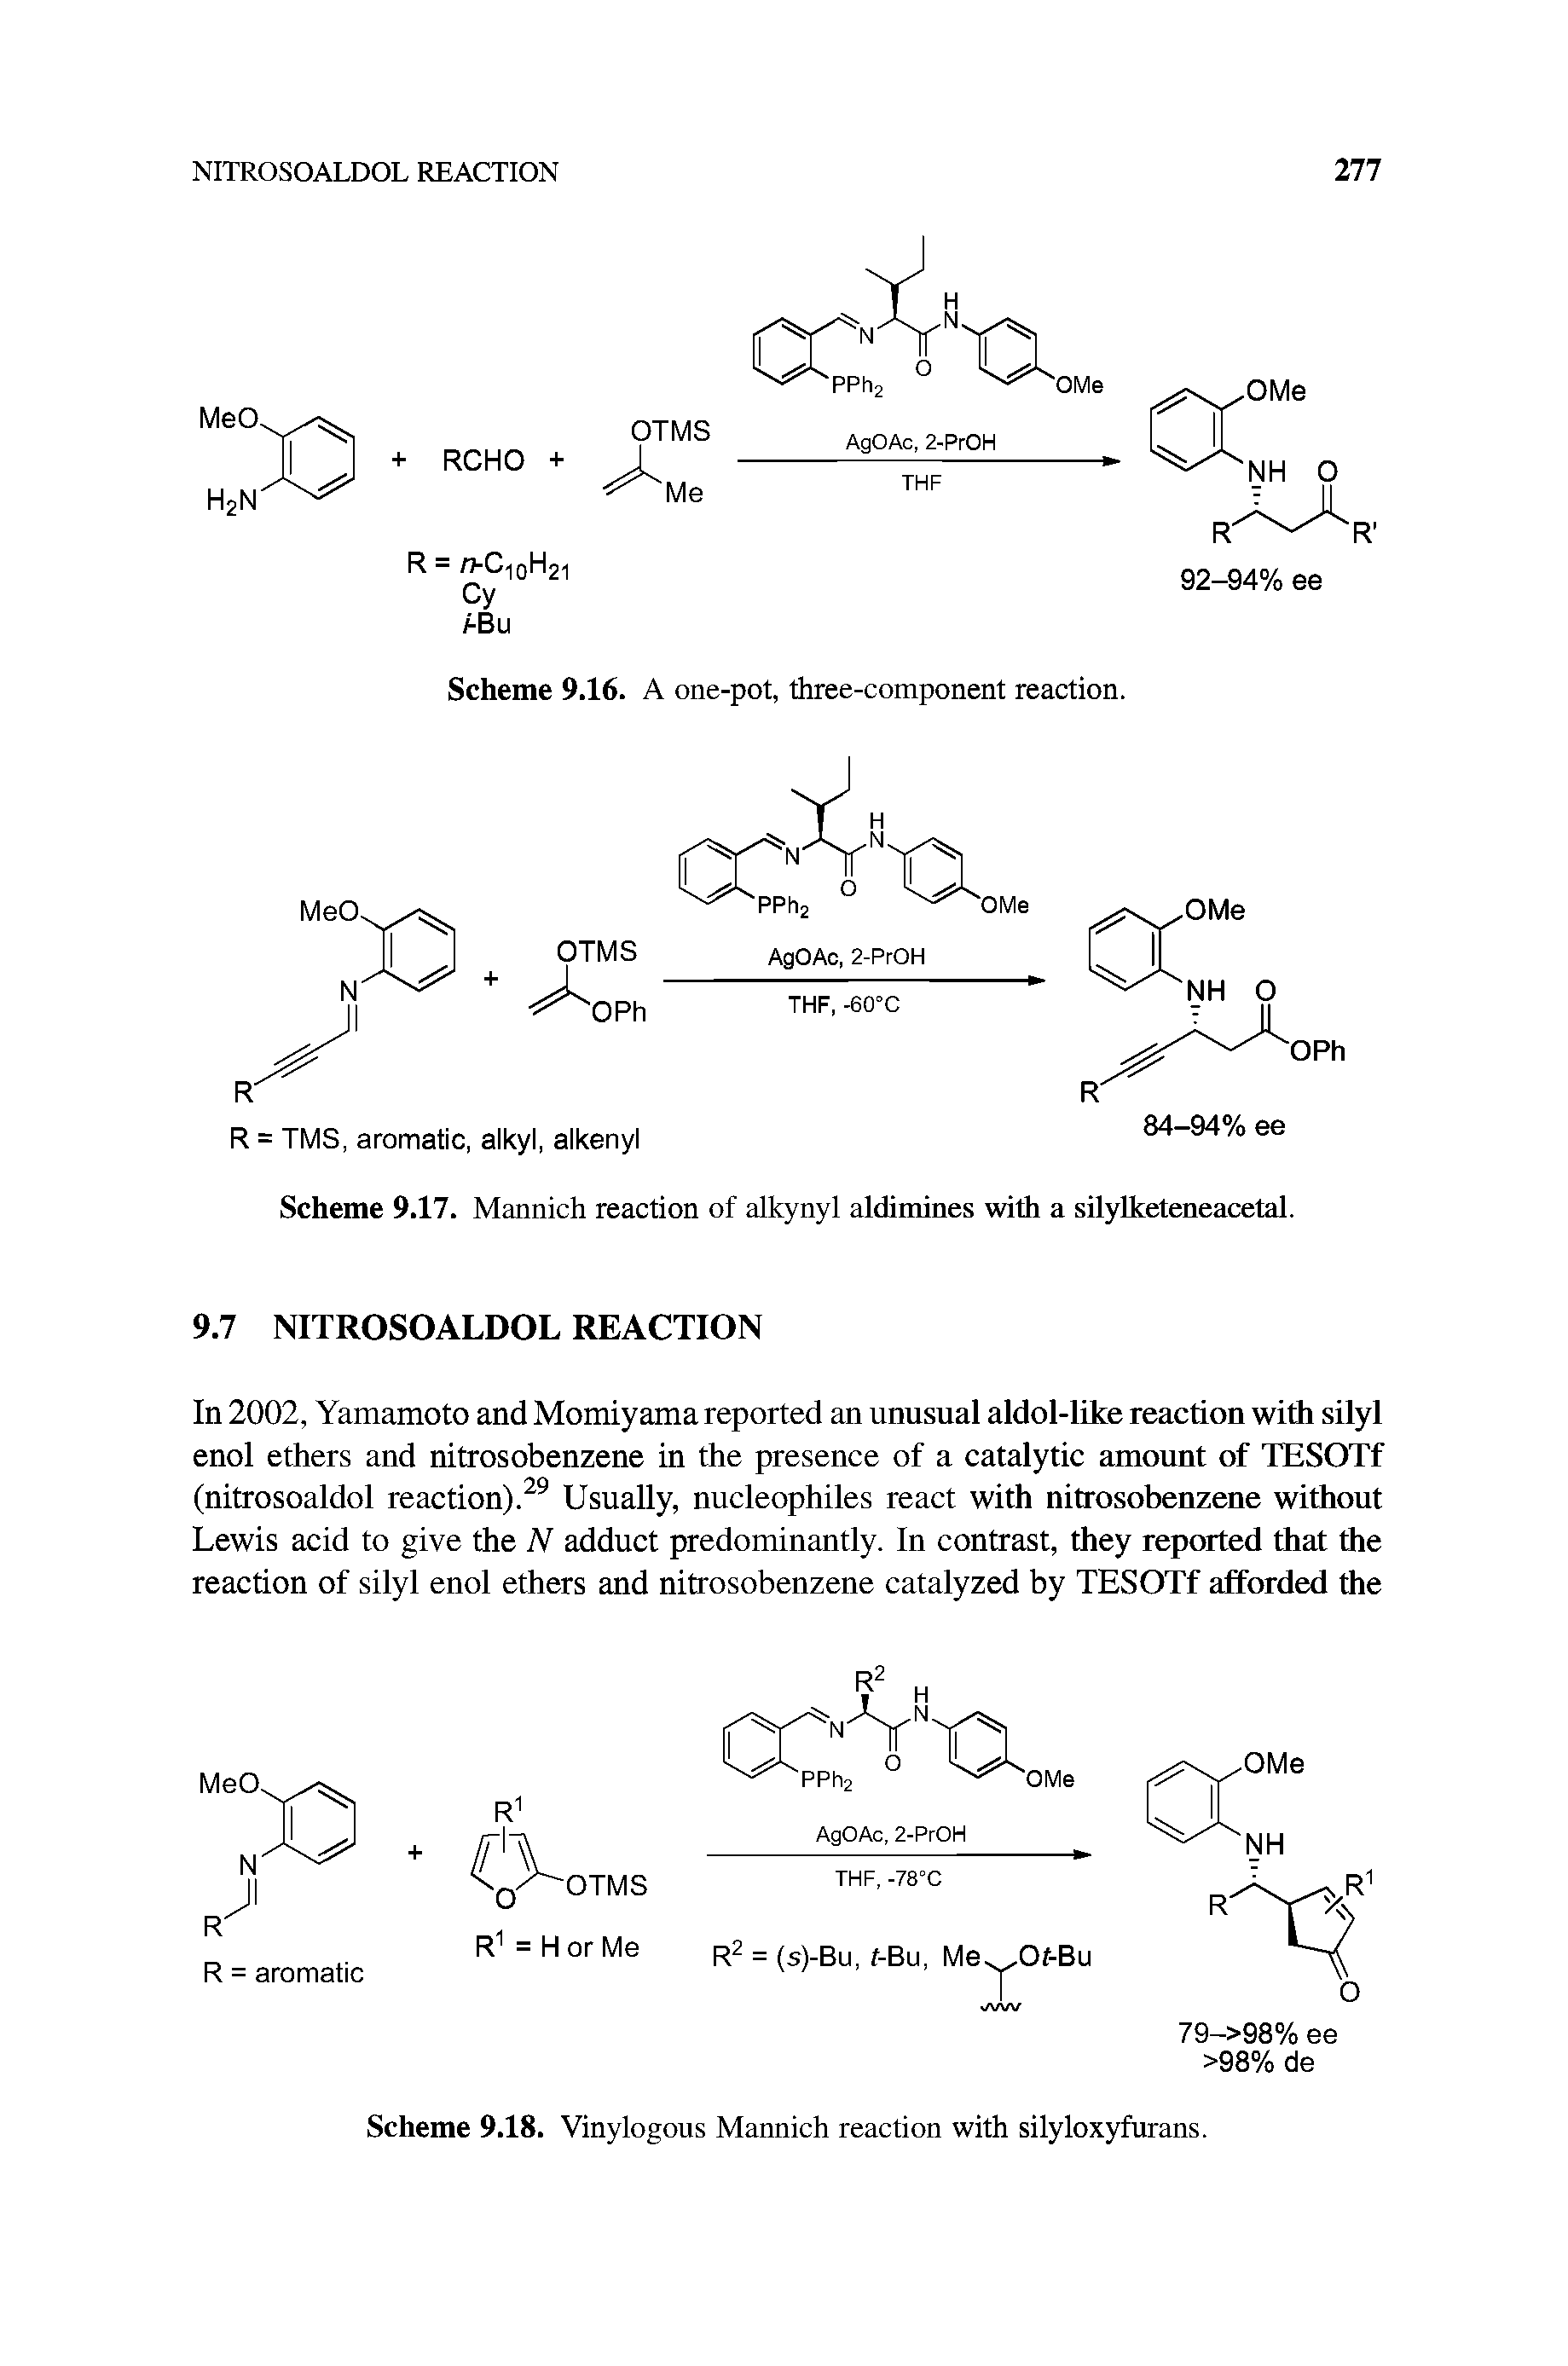 Scheme 9.18. Vinylogous Mannich reaction with silyloxyfurans.